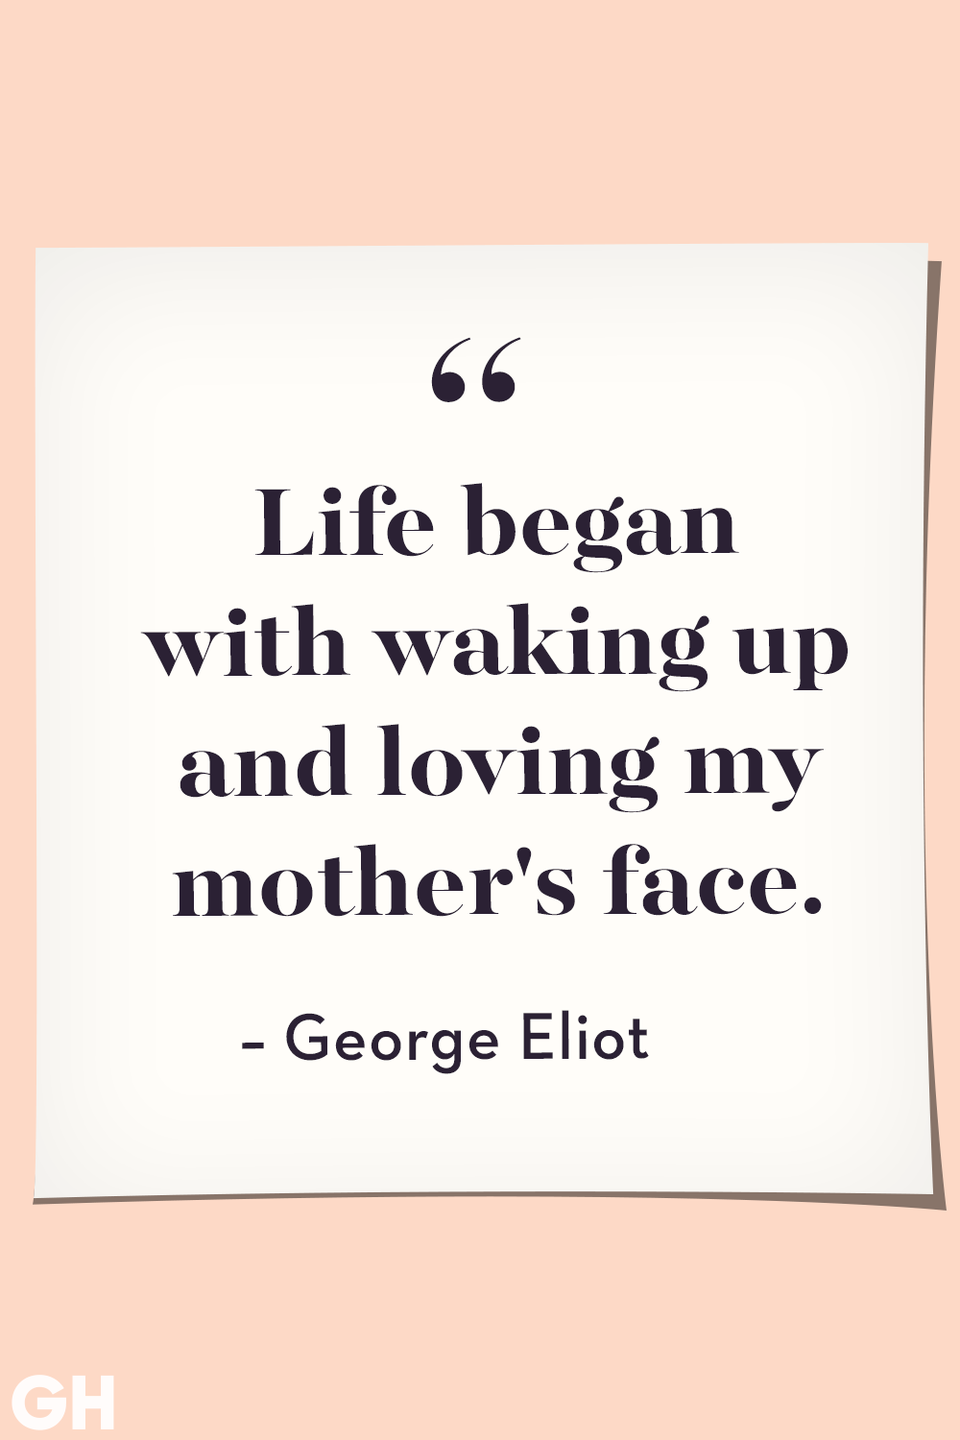 48) George Eliot